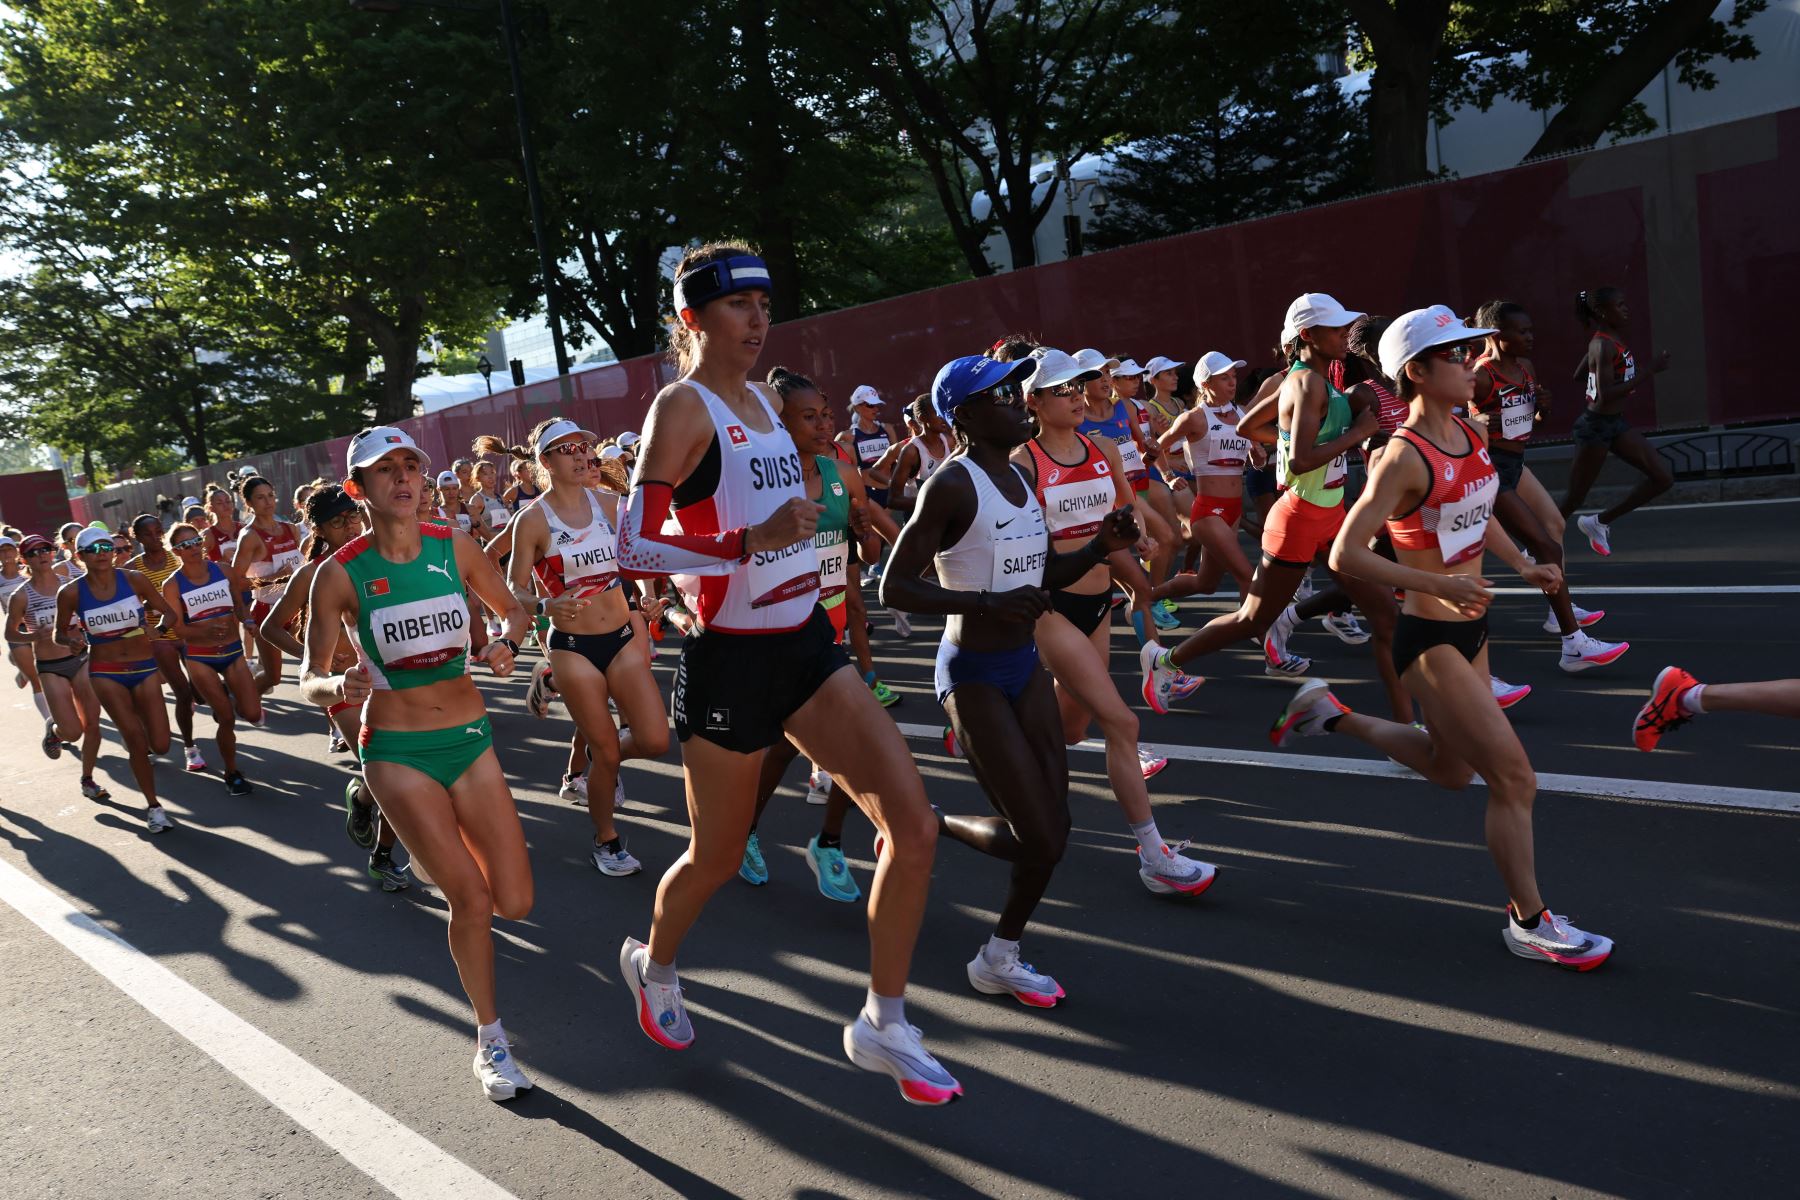 Los atletas compiten en la final del maratón femenino durante los Juegos Olímpicos de Tokio 2020 en Sapporo.
Foto: AFP